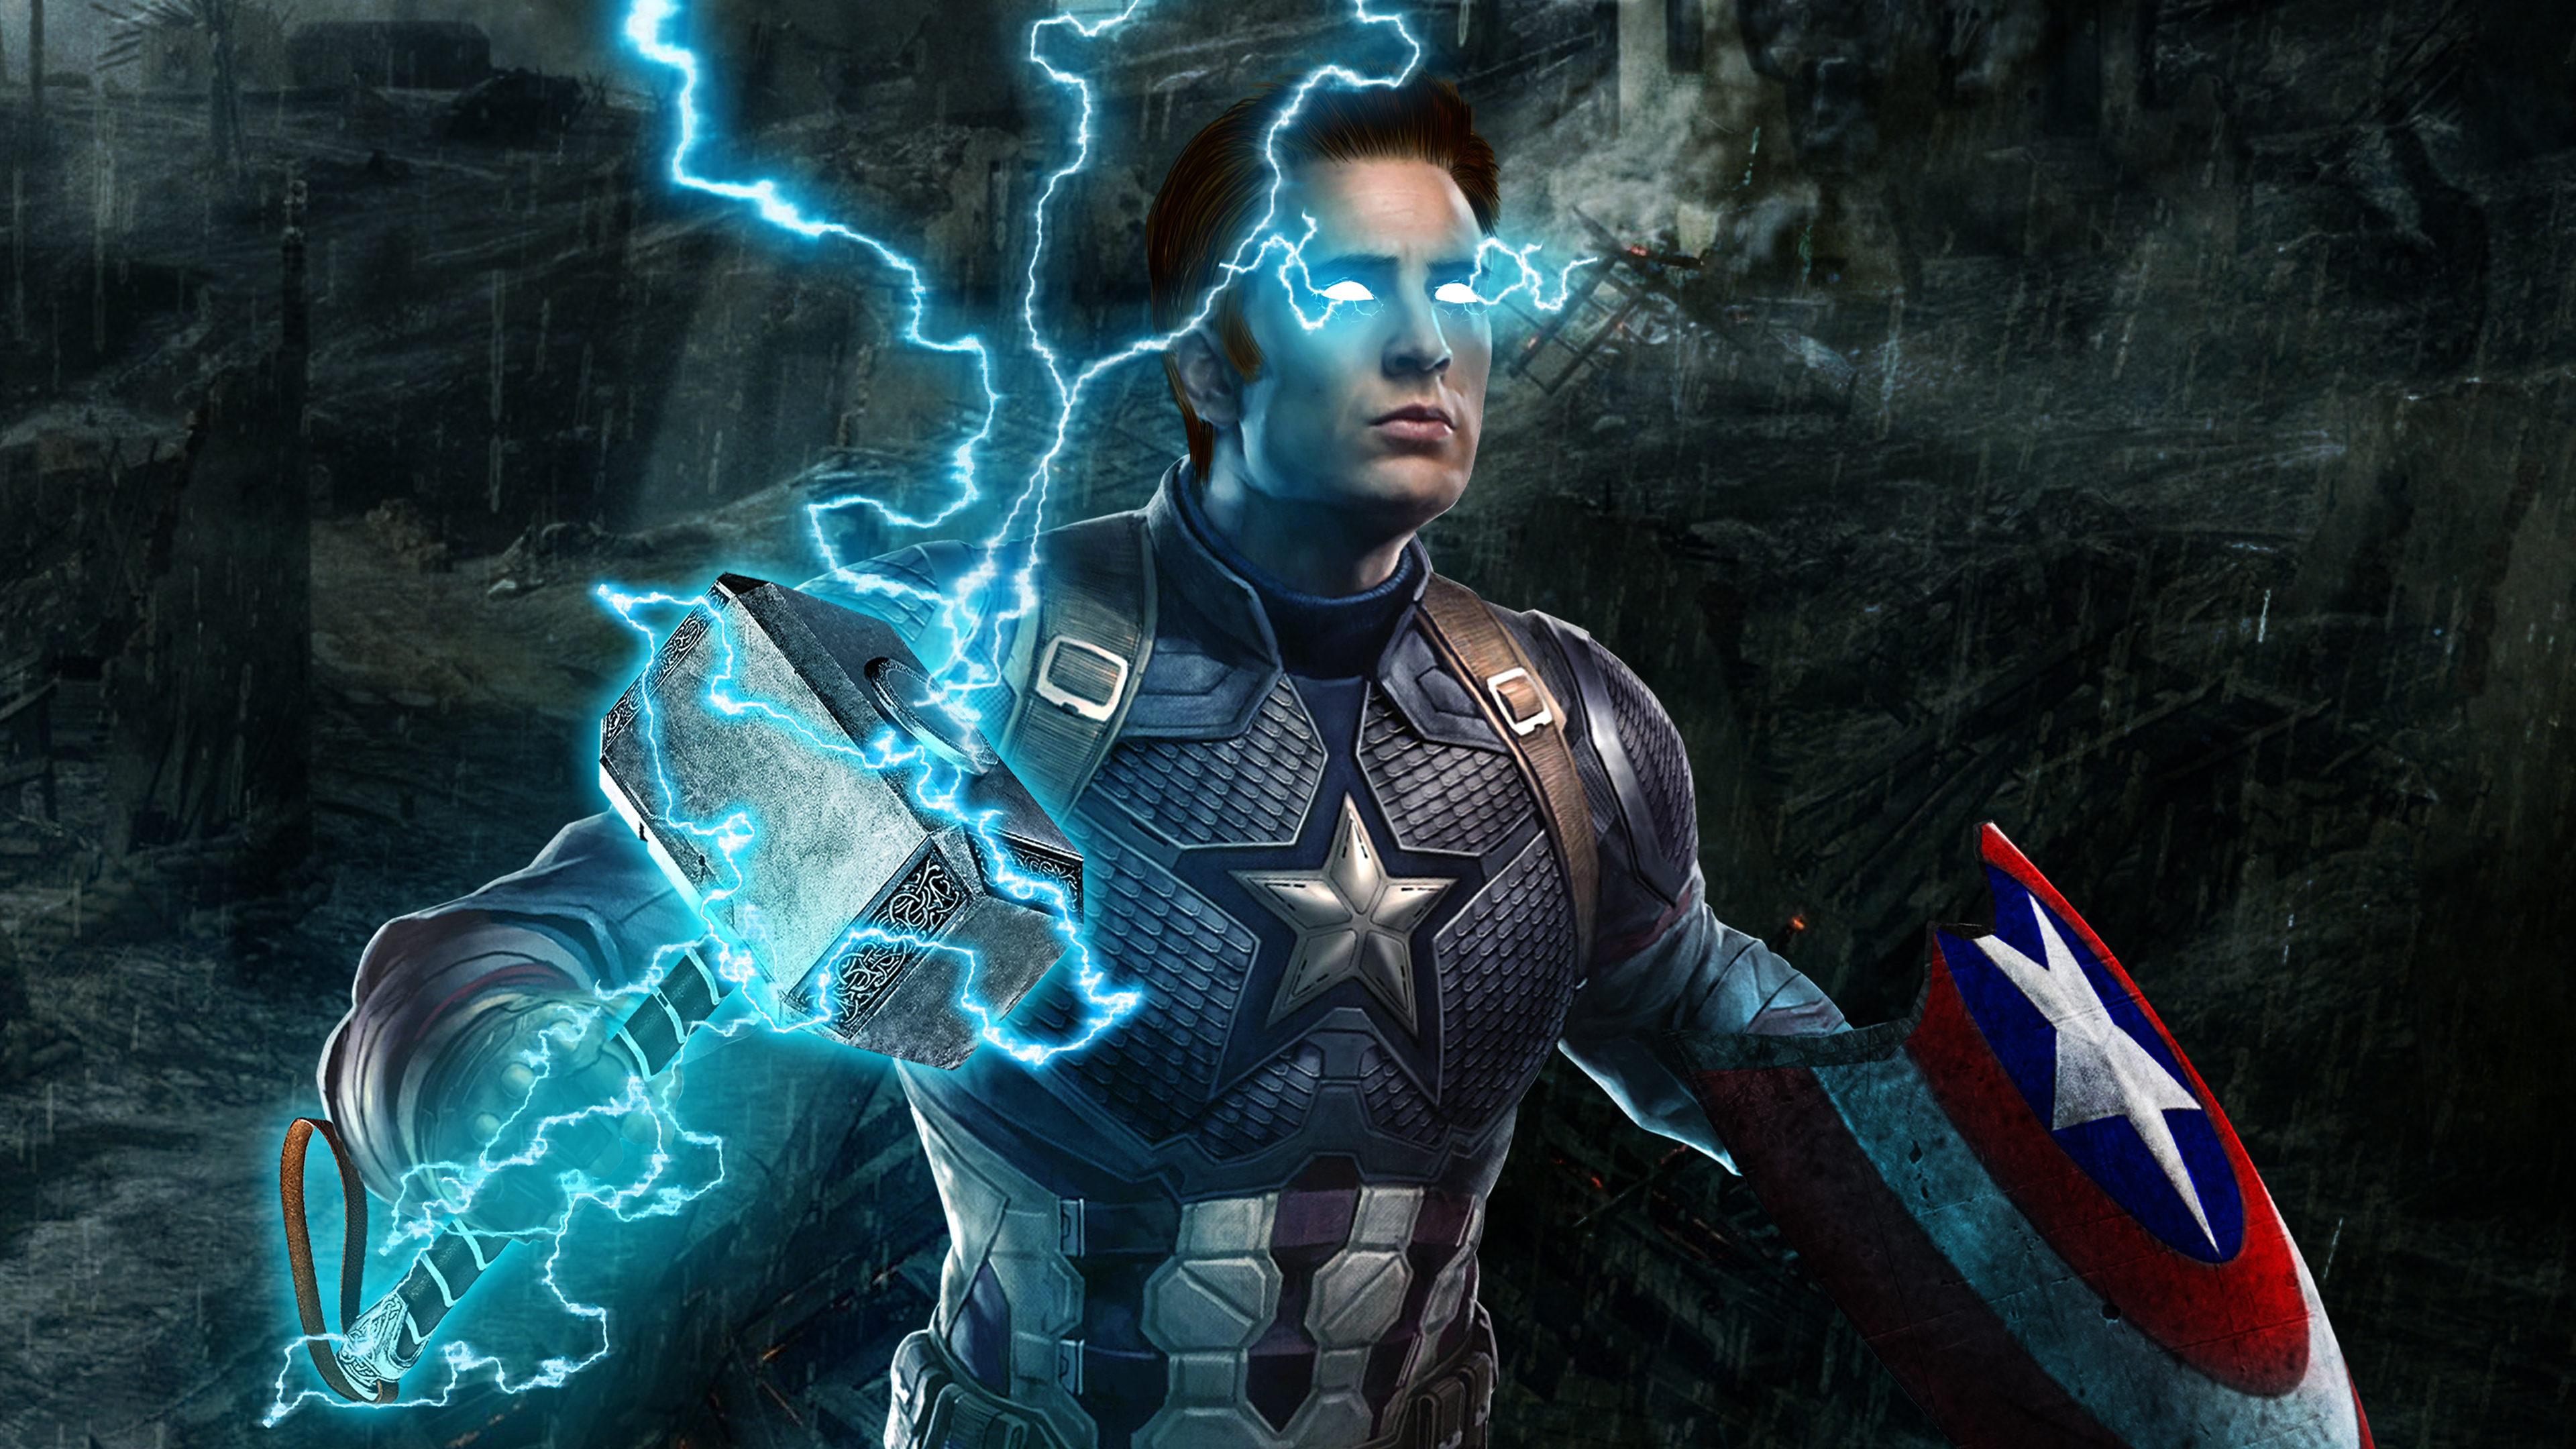 Captain America Mjolnir Avengers Endgame 4k, HD Superheroes, 4k